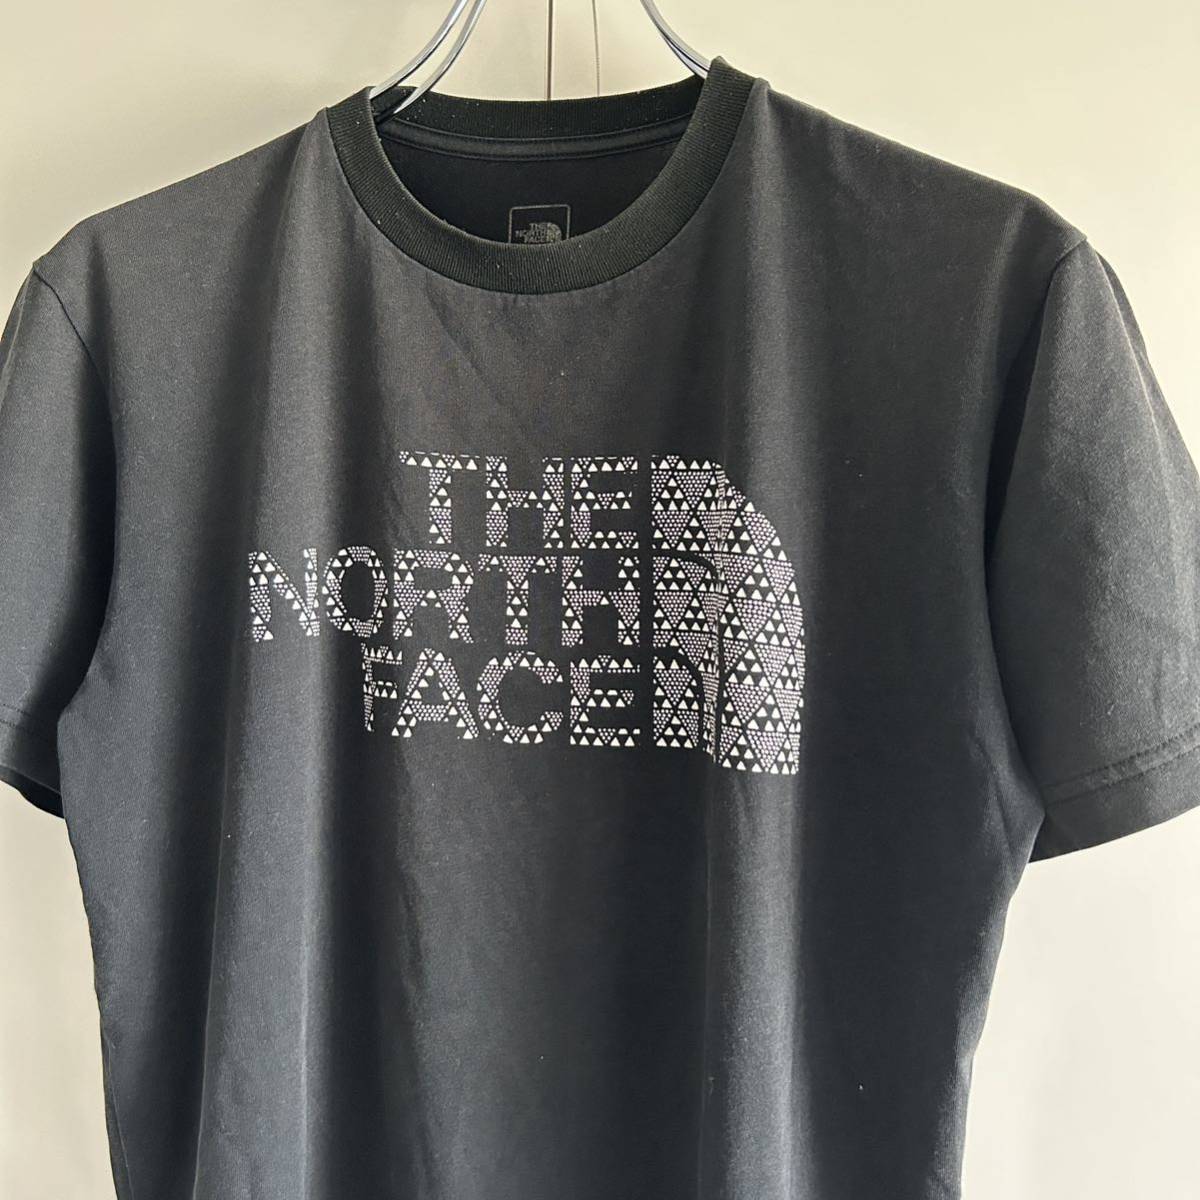 THE NORTH FACE ザノースフェイス プリント Tシャツ M アウトドア ロゴプリント ブラック NT31703X 正規品の画像1